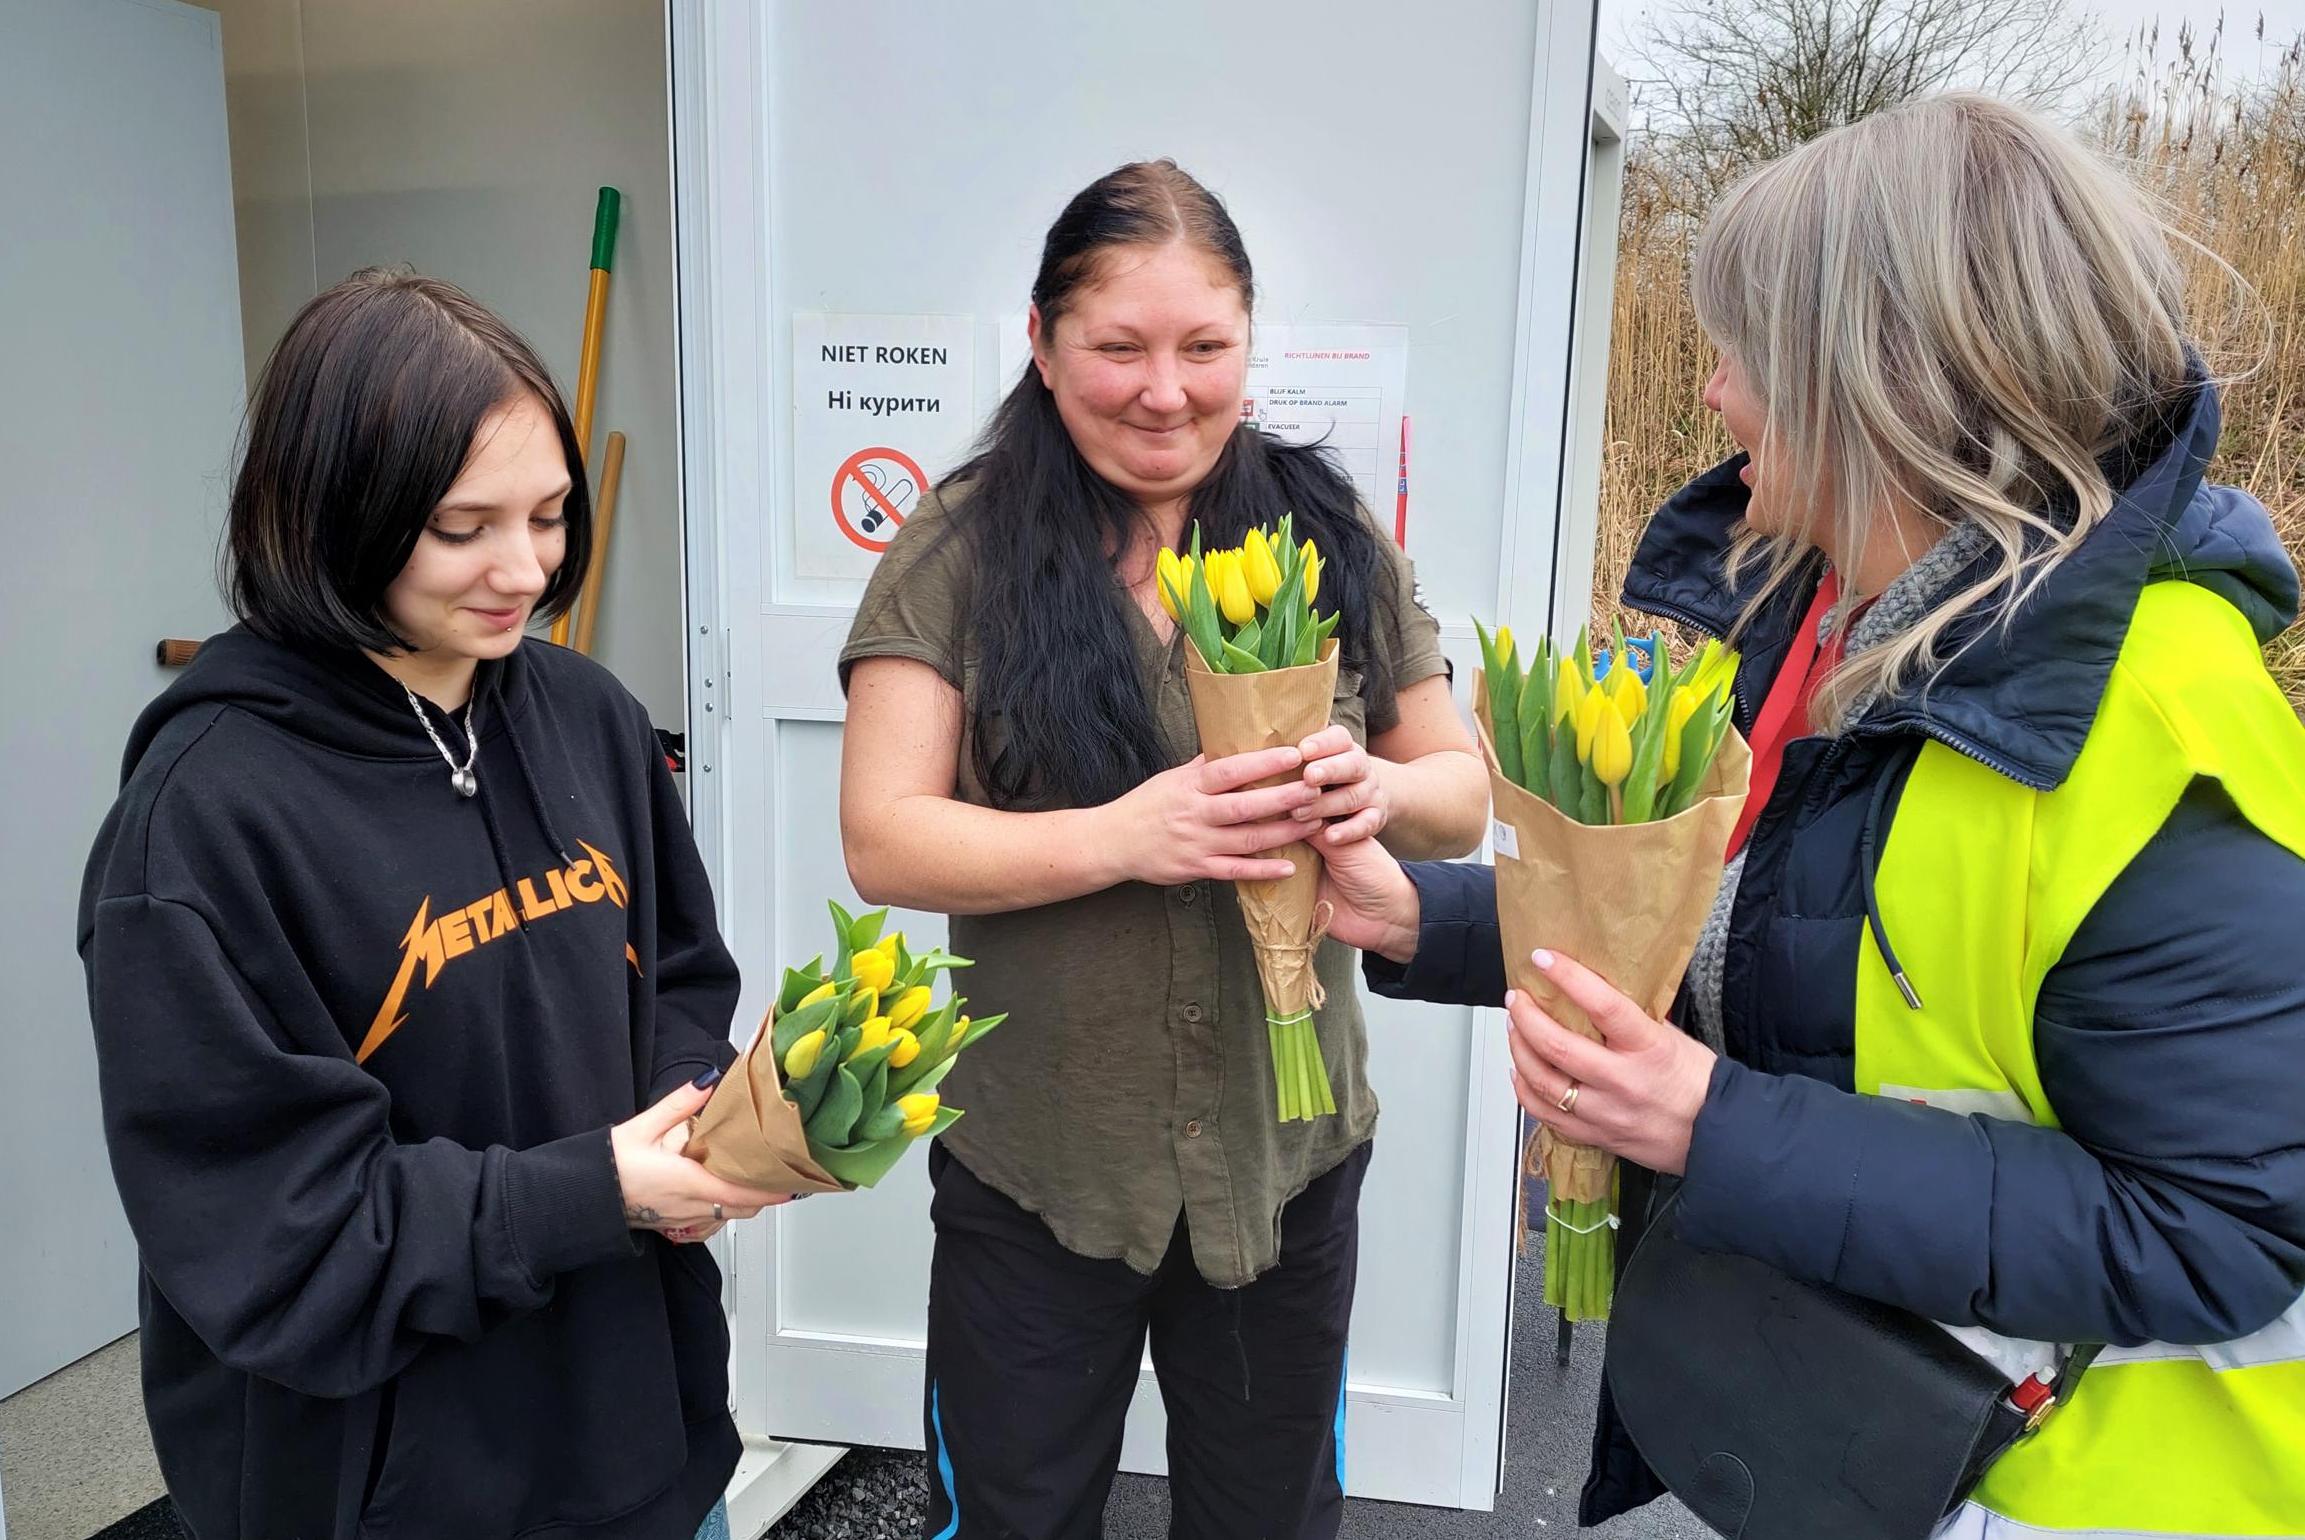 Oekraïense vrouwen en meisjes krijgen bloemen op Internationale Vrouwendag “Fijn dat er aan ons gedacht wordt” (Mechelen) Het Nieuwsblad Mobile foto